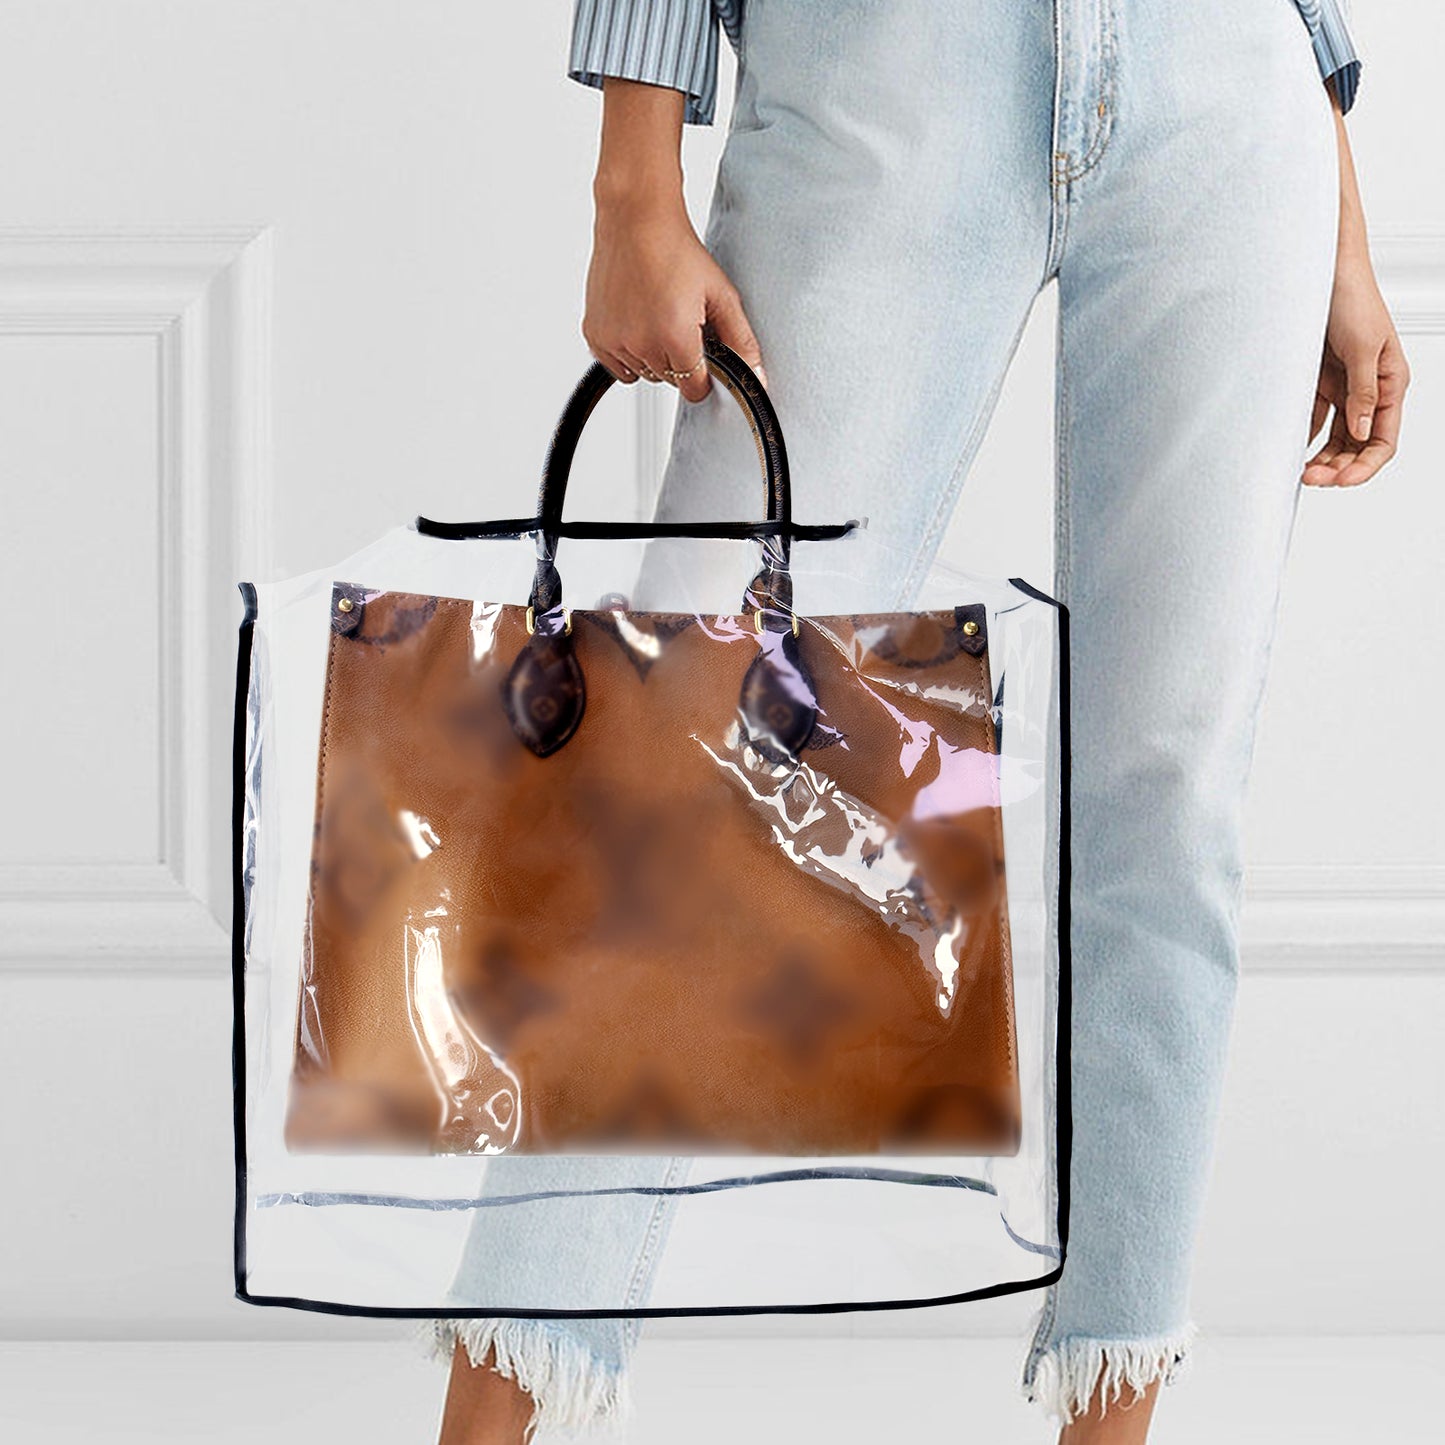 Handbag Rain Protector – OPPOSHE